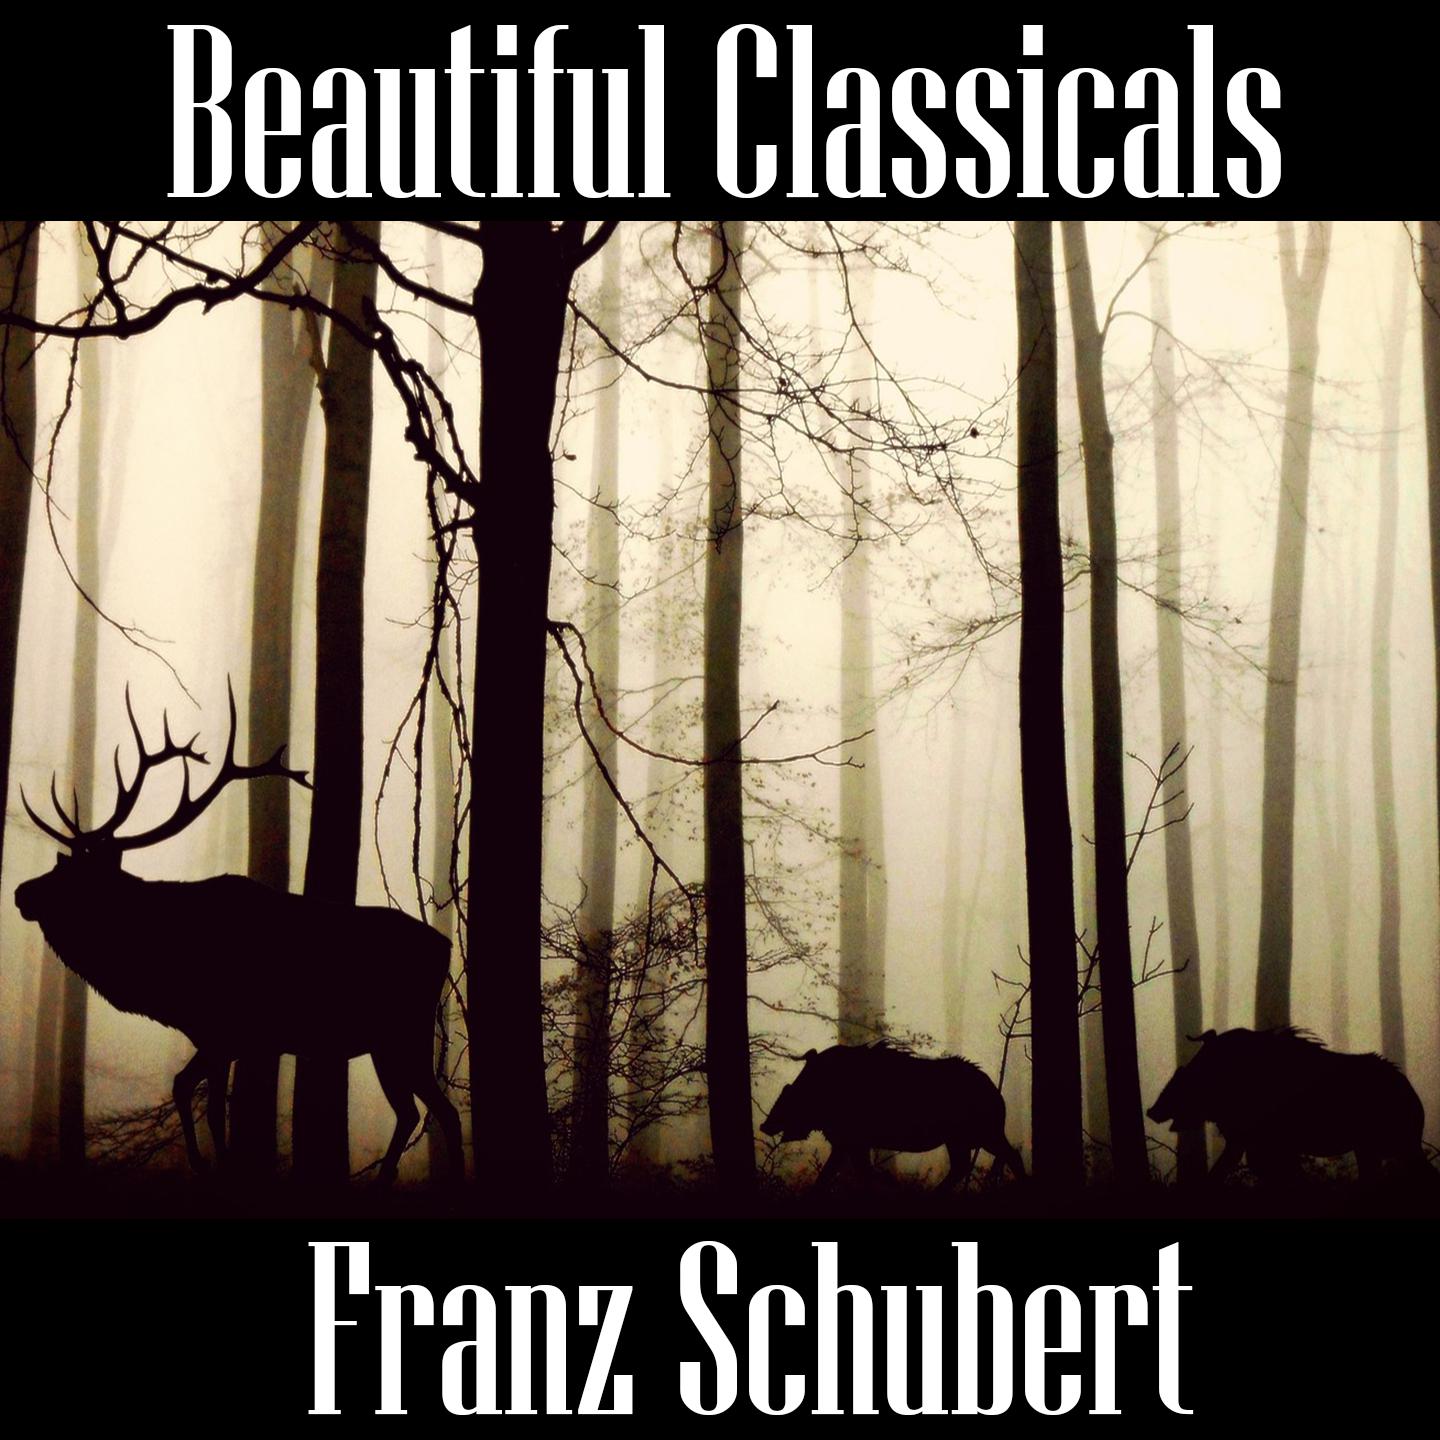 Beautiful Classicals: Franz Schubert